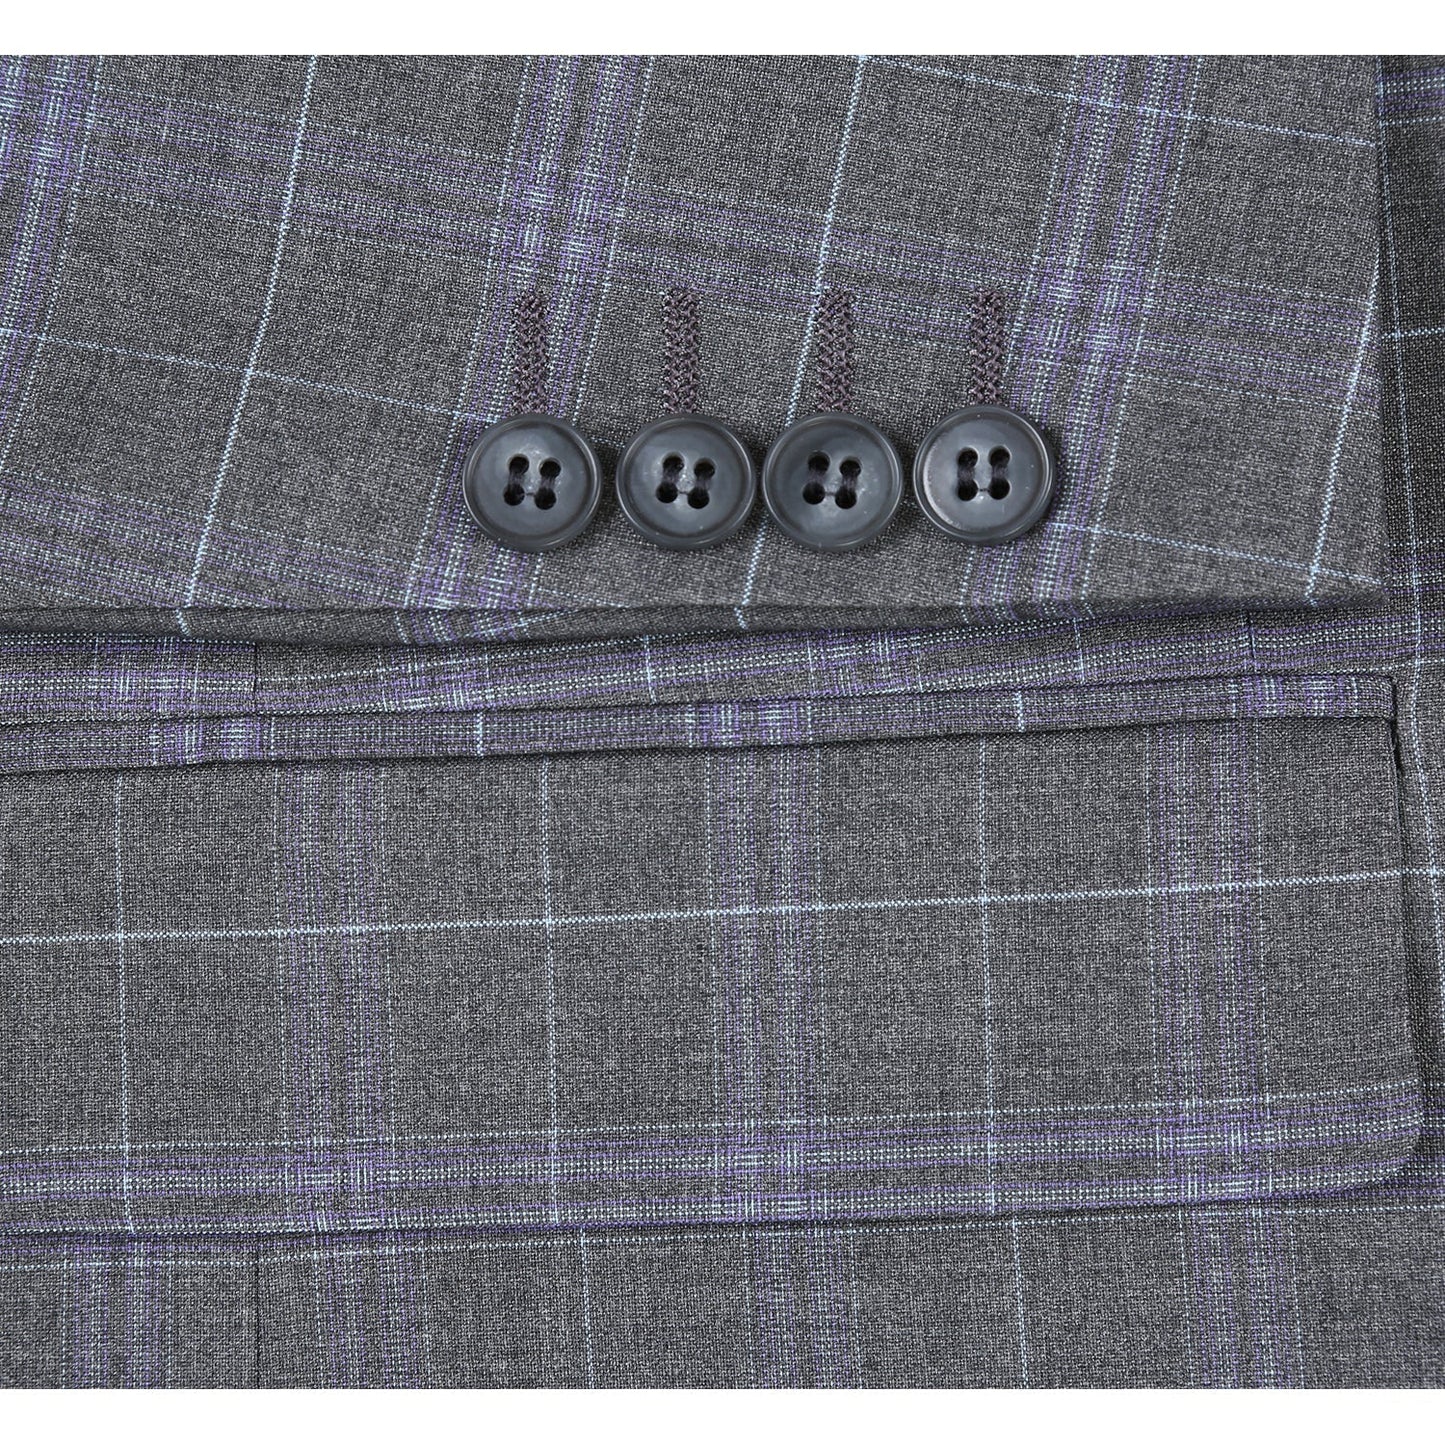 293-25 Men's Classic Fit Grey and Lavender Plaid Suit